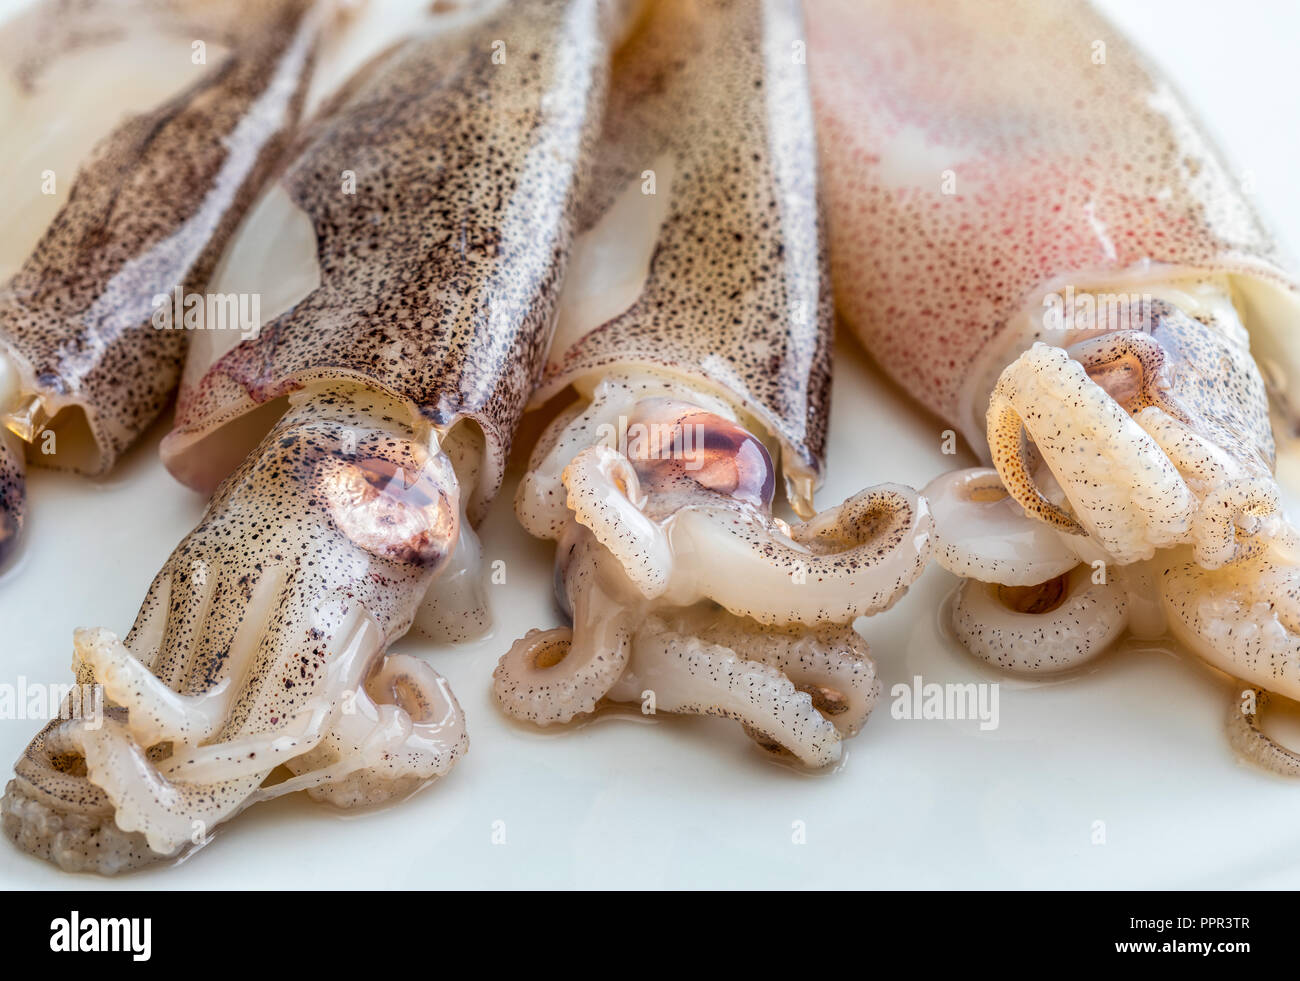 Muy Fresco Calamares Bebe Recien Capturados En El Mar Fotografia De Stock Alamy